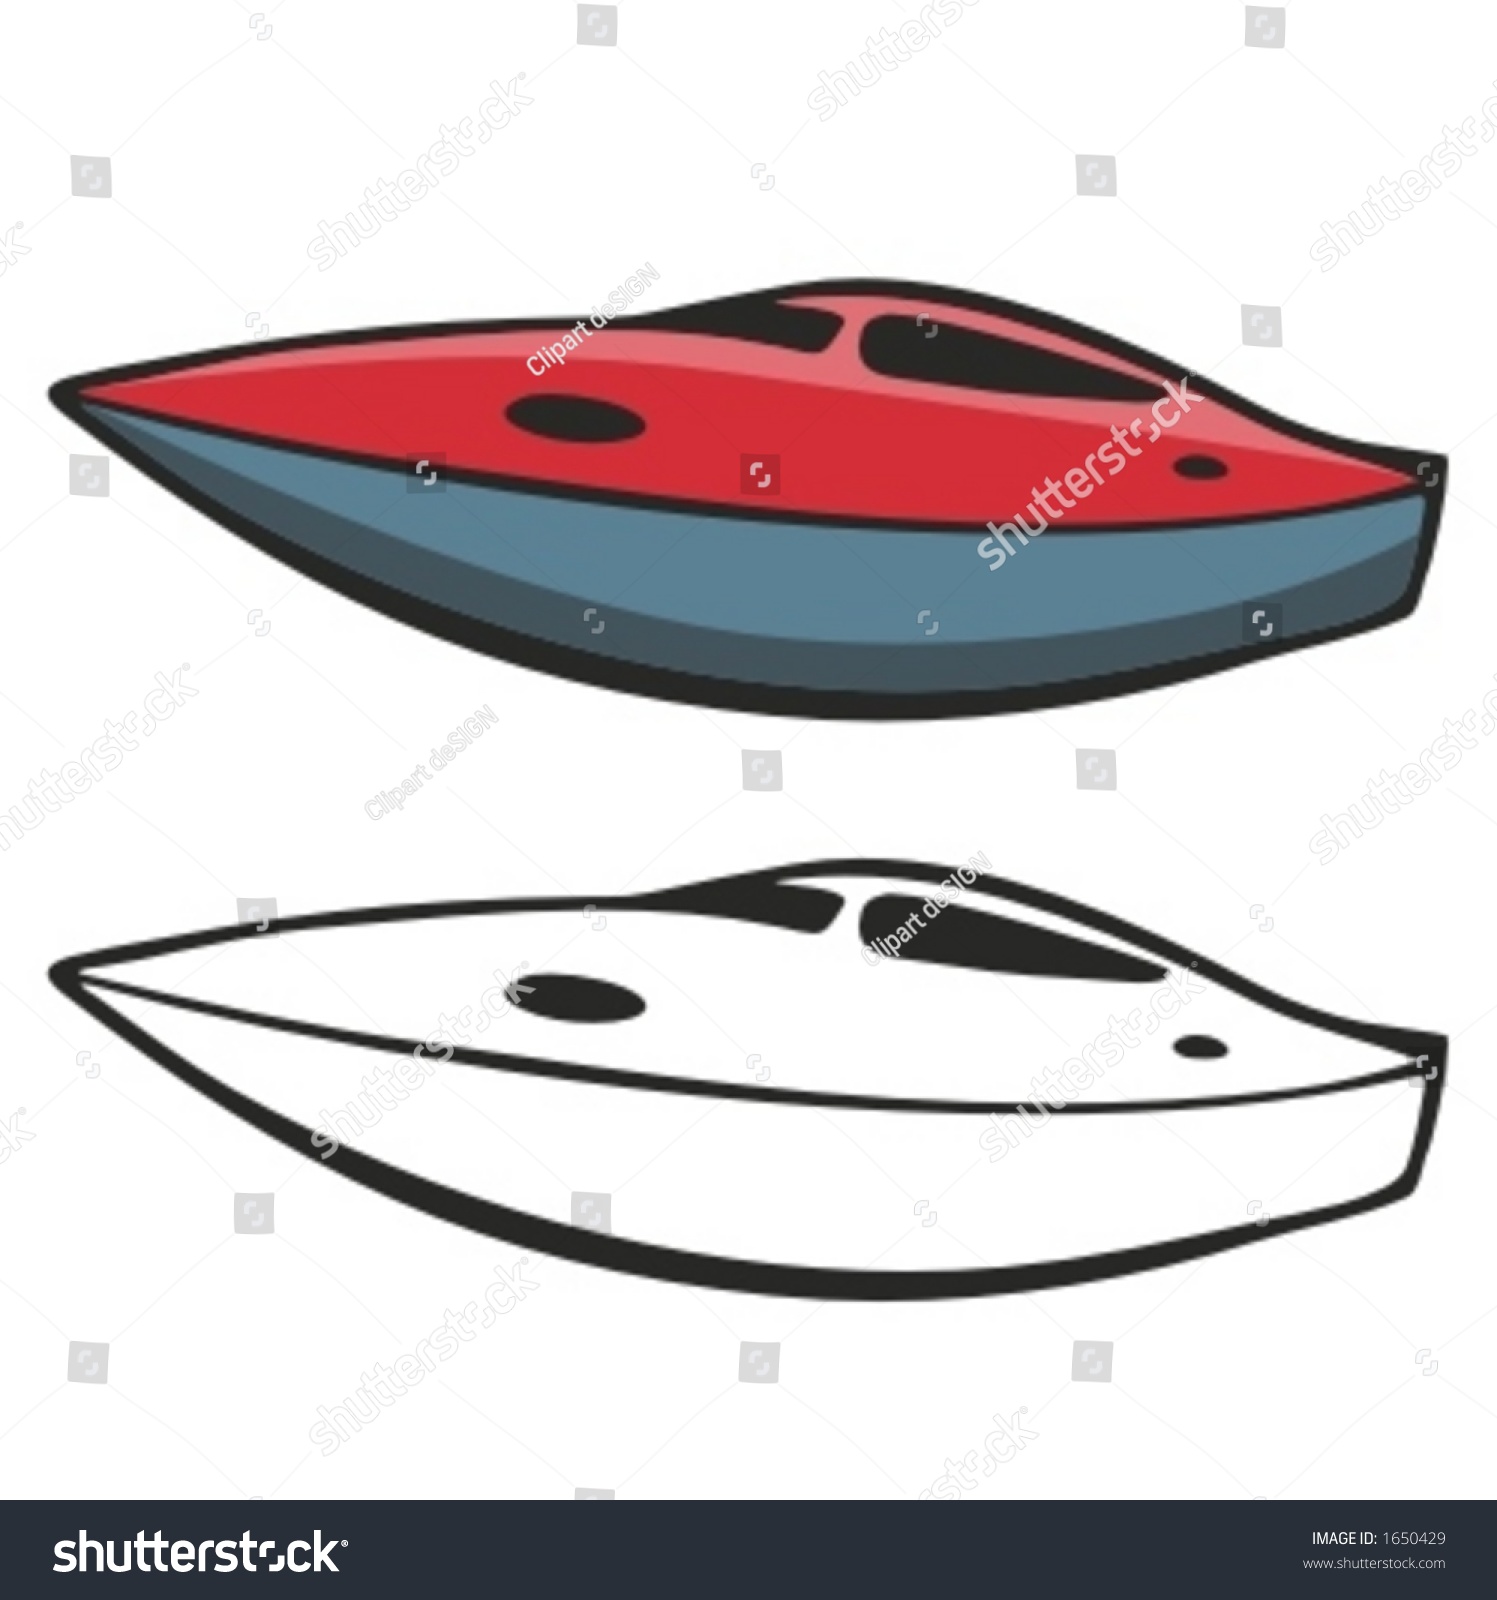 Motor Boat Vector Illustration Stock Vector 1650429 - Shutterstock